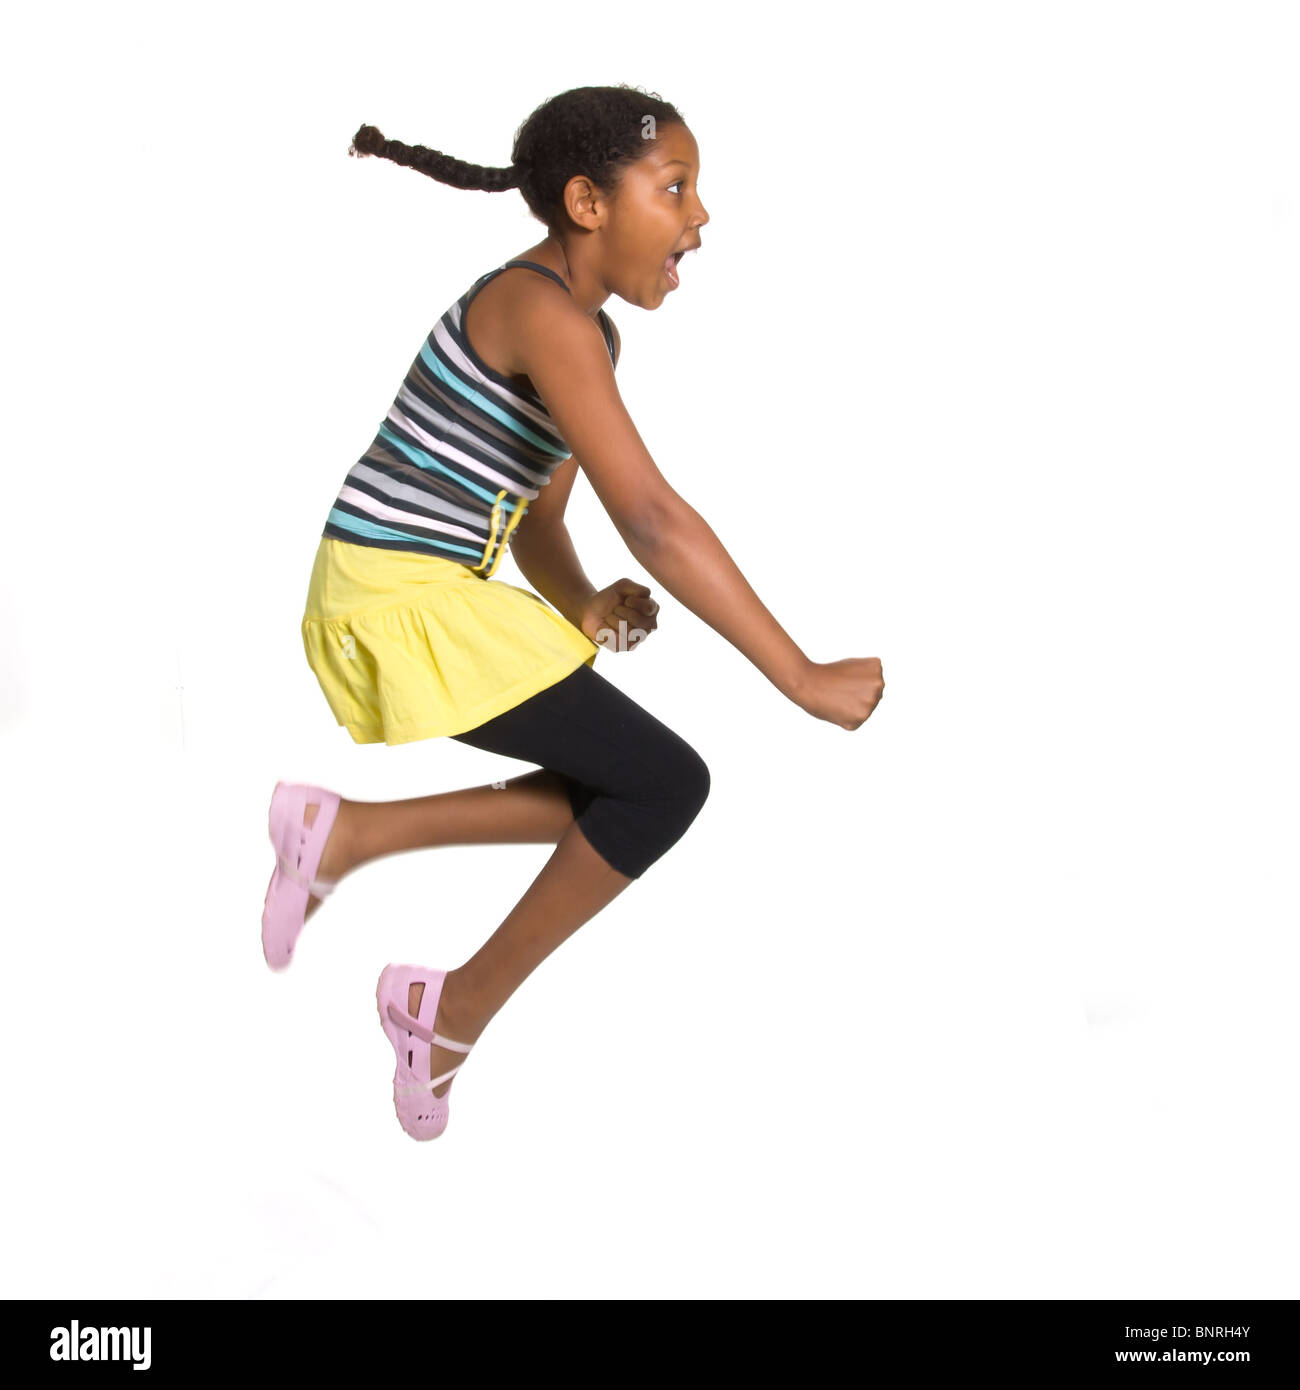 Giovani espressiva razza mista ragazza che saltava e saltando isolata contro uno sfondo bianco. Foto Stock